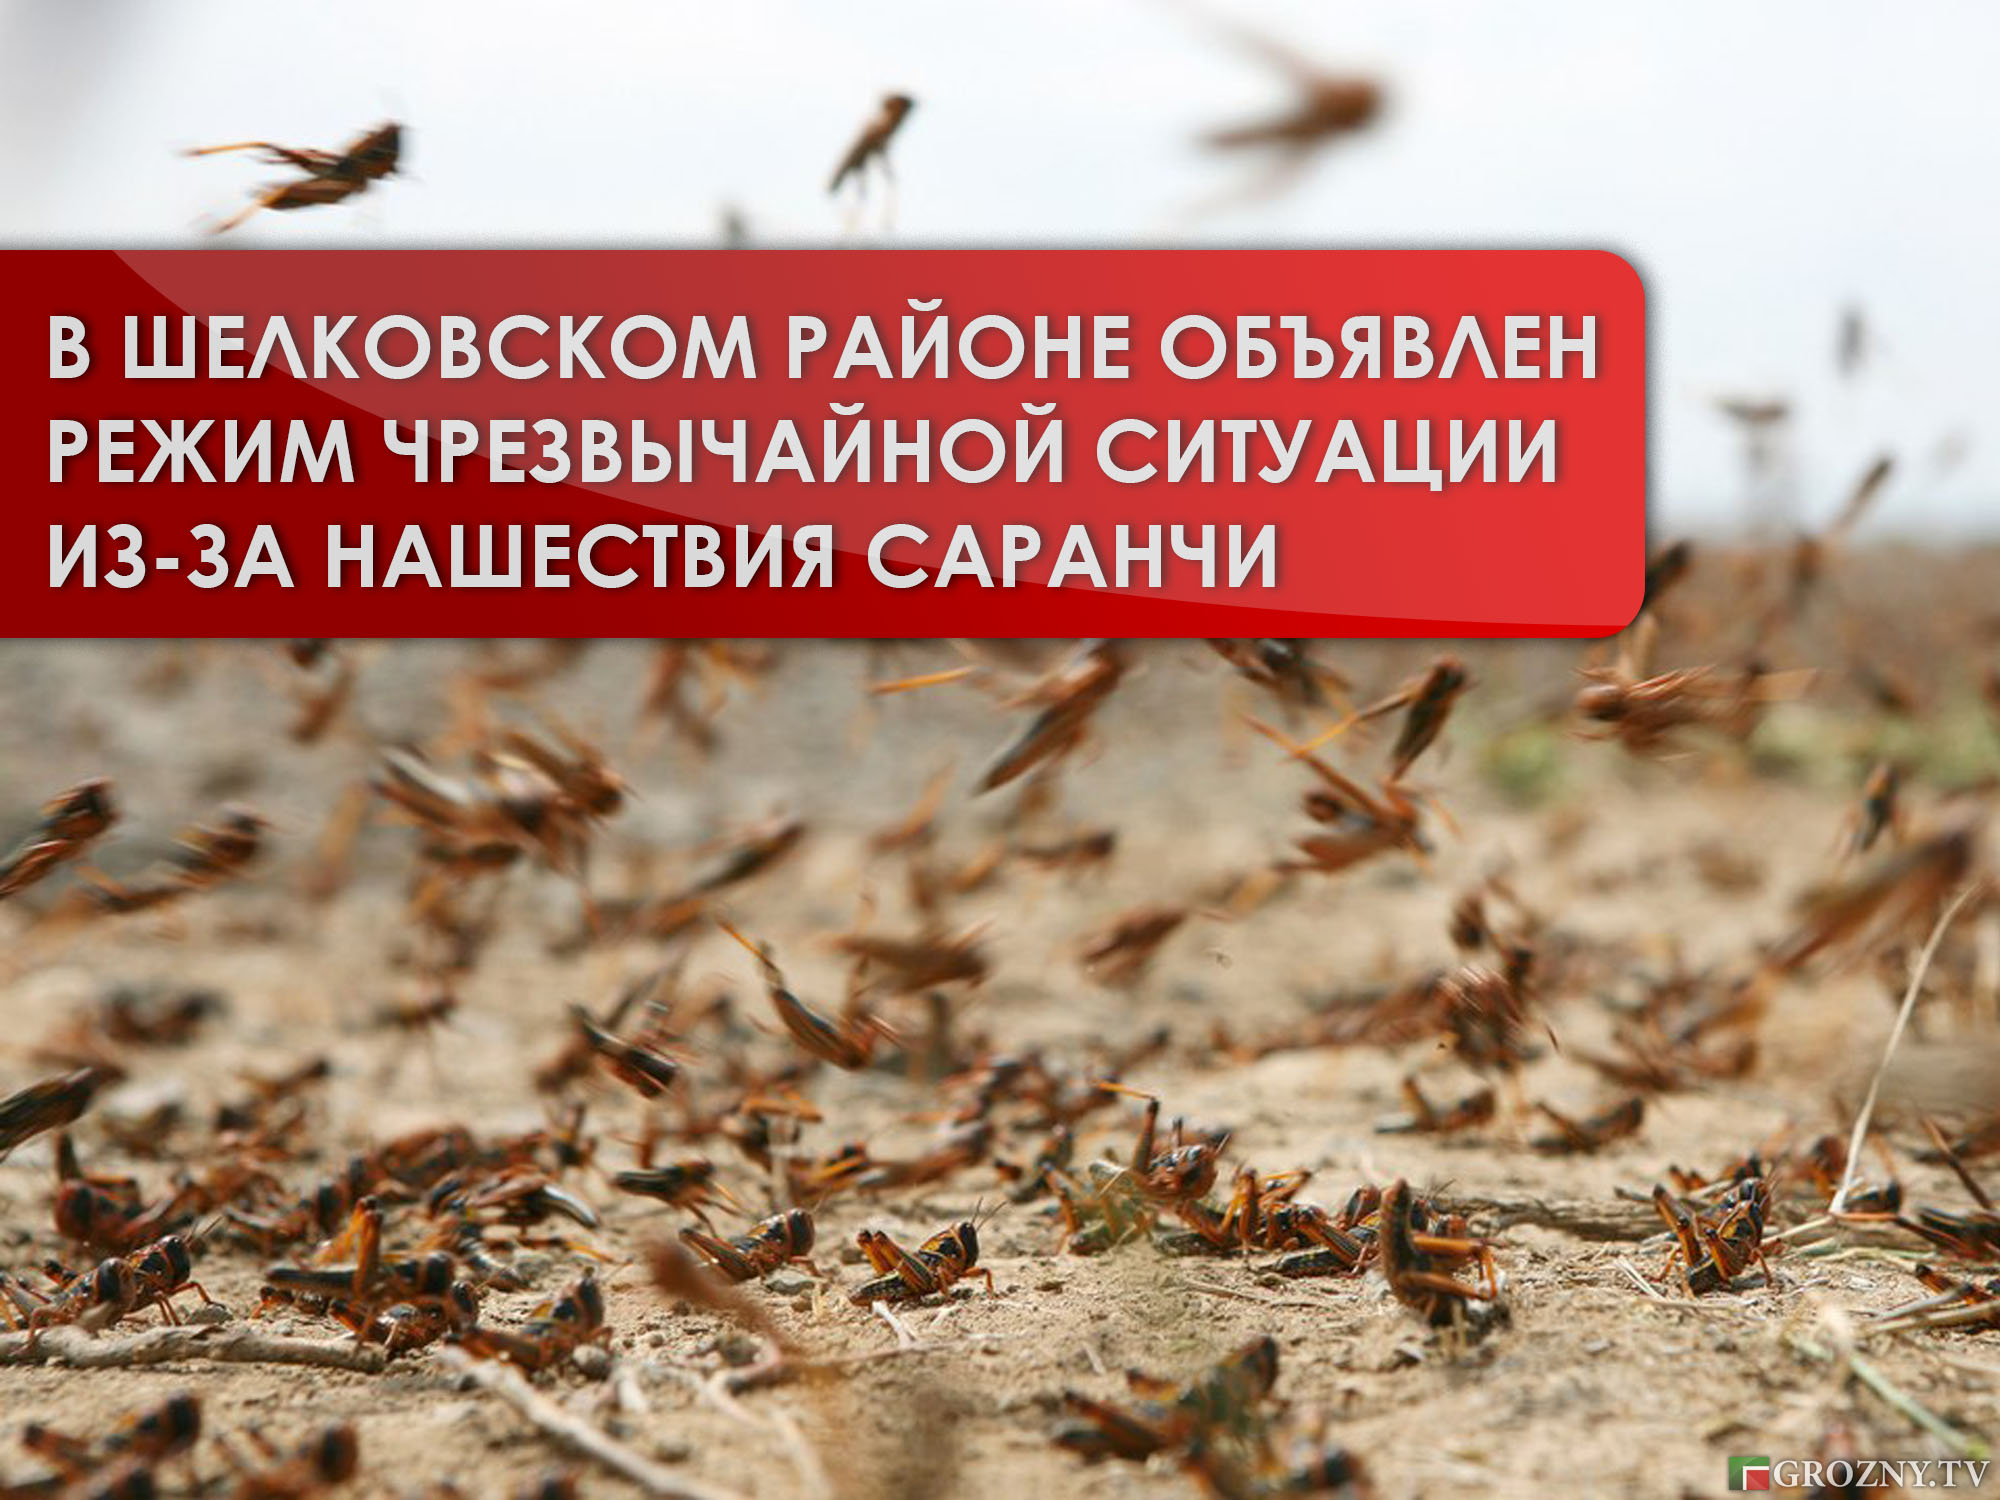 В Шелковском районе объявлен режим чрезвычайной ситуации из-за нашествия саранчи 